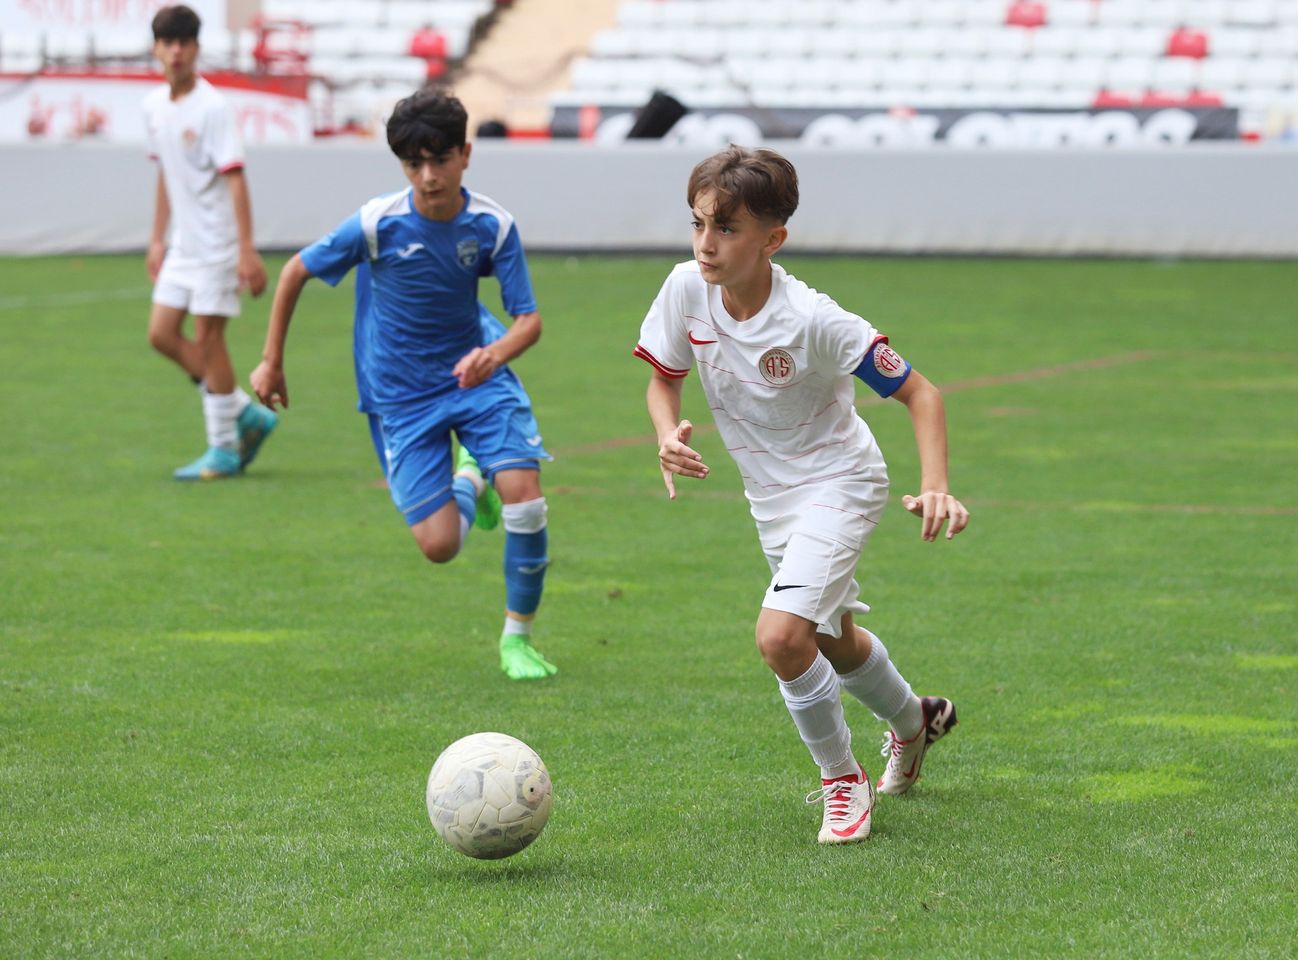 Antalya Dünya Çocuklar Kupası Şampiyonları Belli Oldu